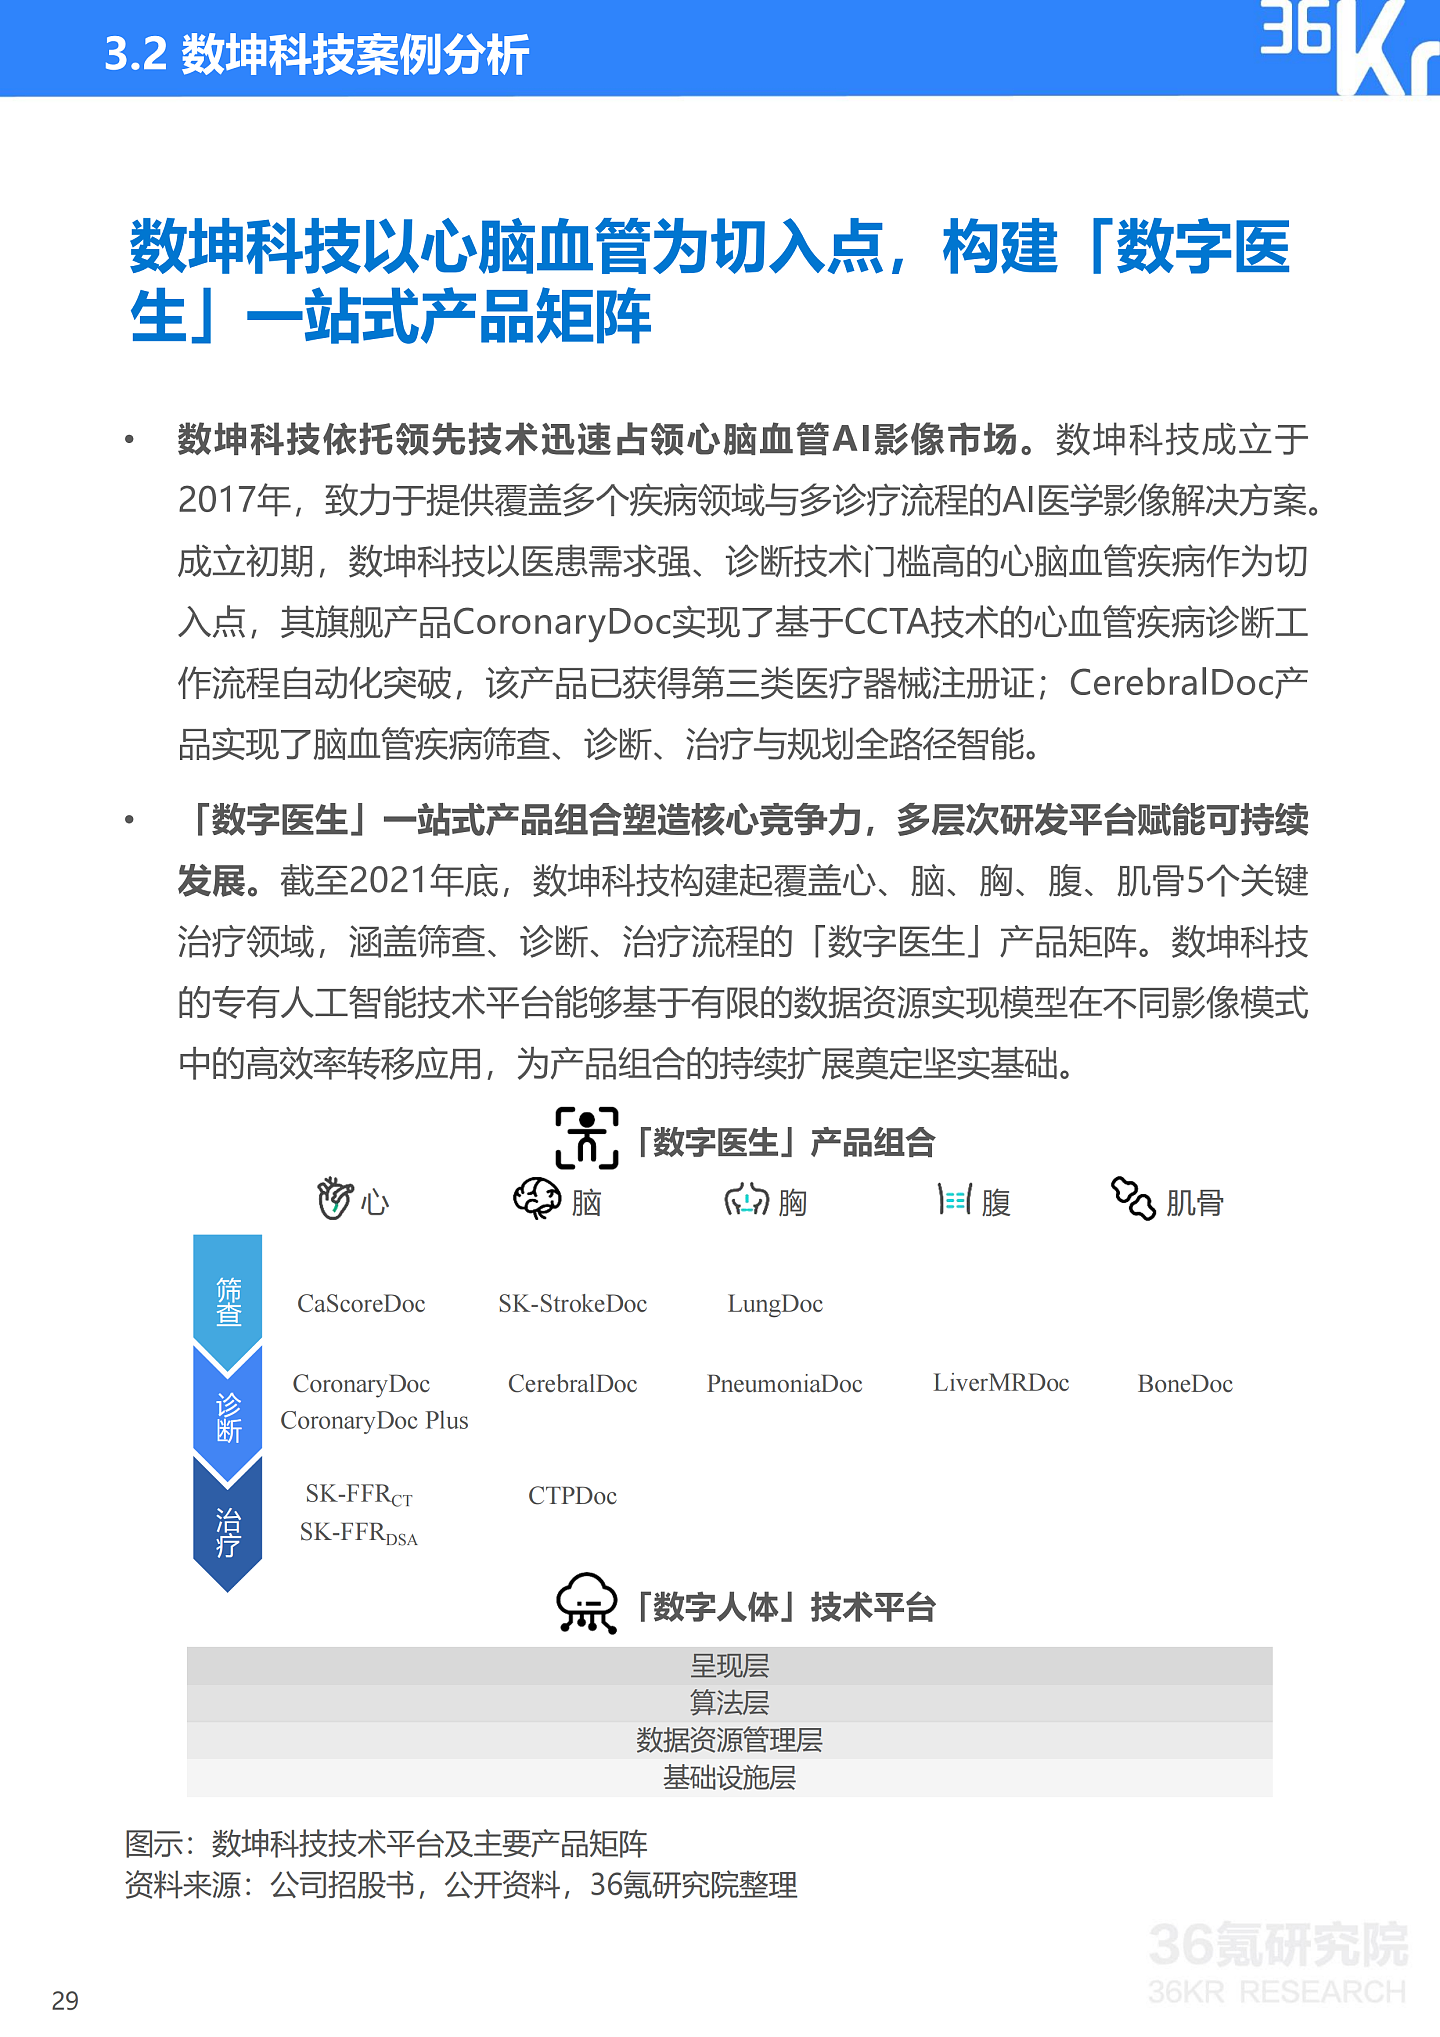 36氪研究院 | 2021年中国医疗AI行业研究报告 - 32